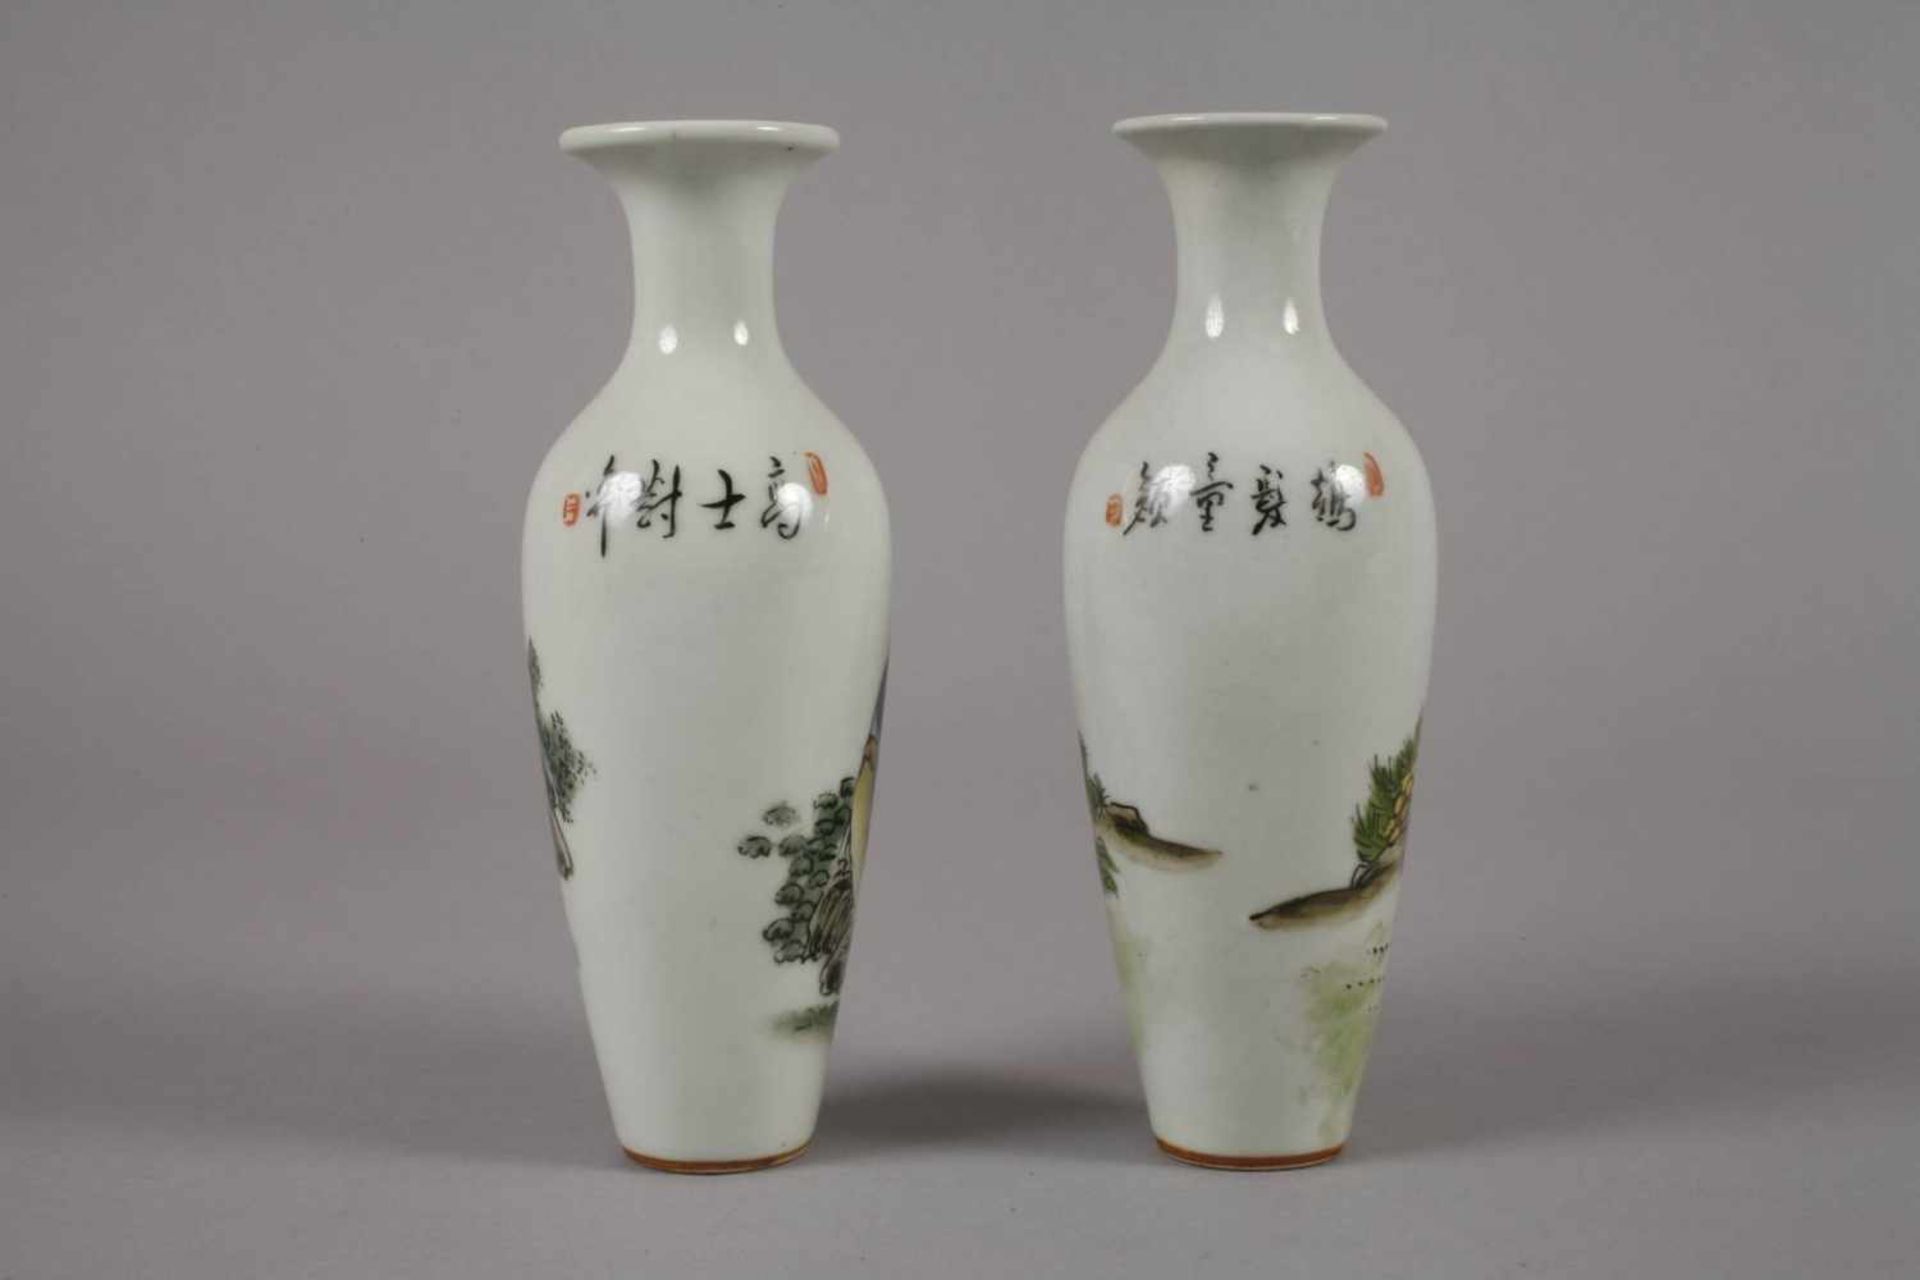 Sechs Vasen China1960er bis 1970er Jahre, gemarkt und signiert, Weißporzellan in polychromer - Bild 3 aus 12